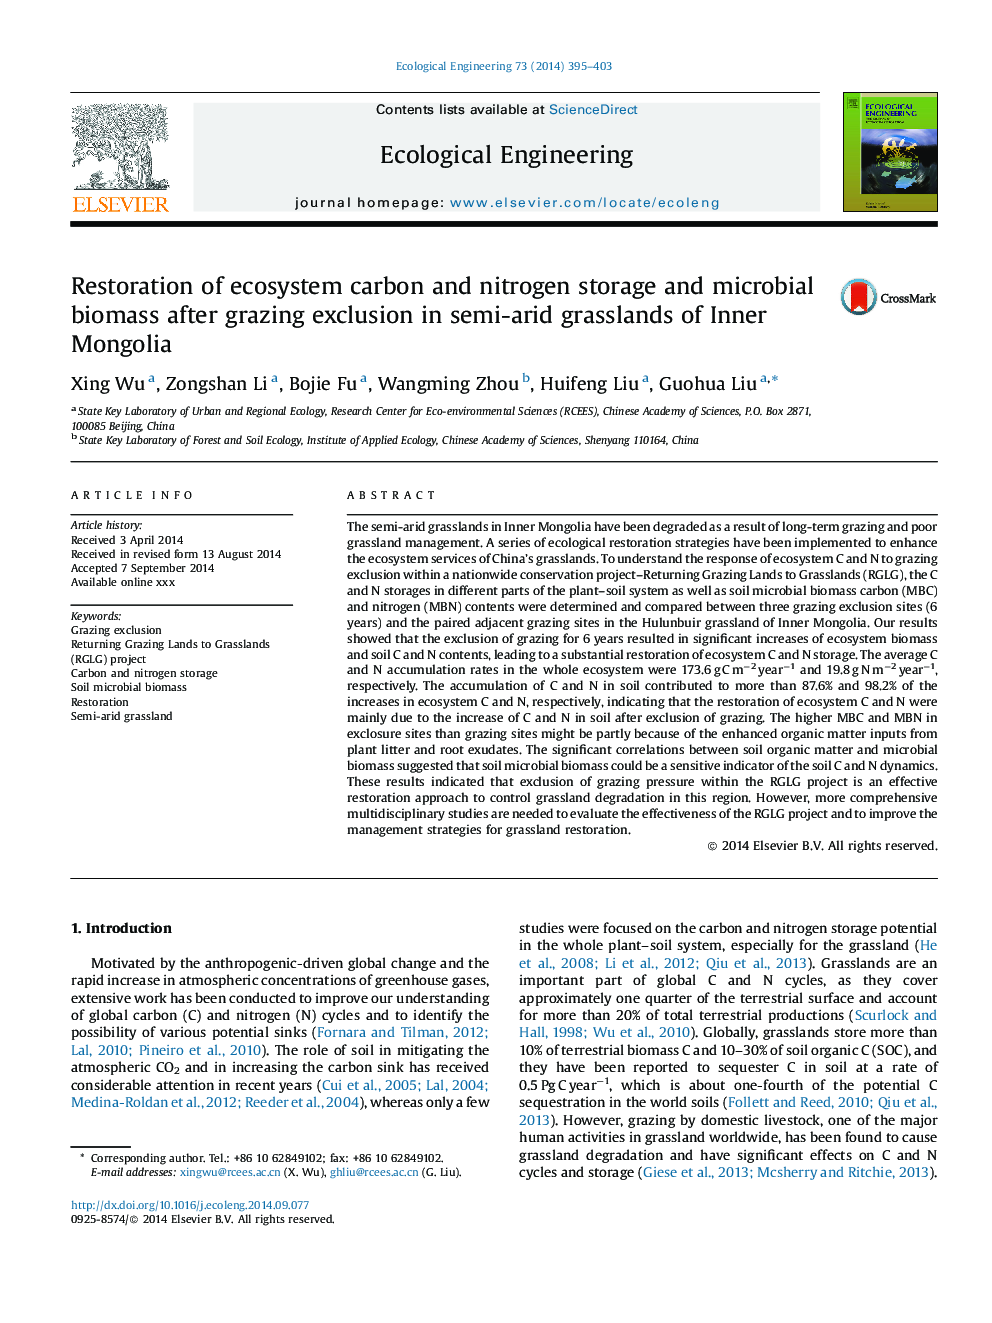 بازسازی ذخایر کربن و نیتروژن اکوسیستم و بیوماس میکروبی پس از خروج از چراگاه در مراتع نیمه خشخاری مغولستان داخلی 